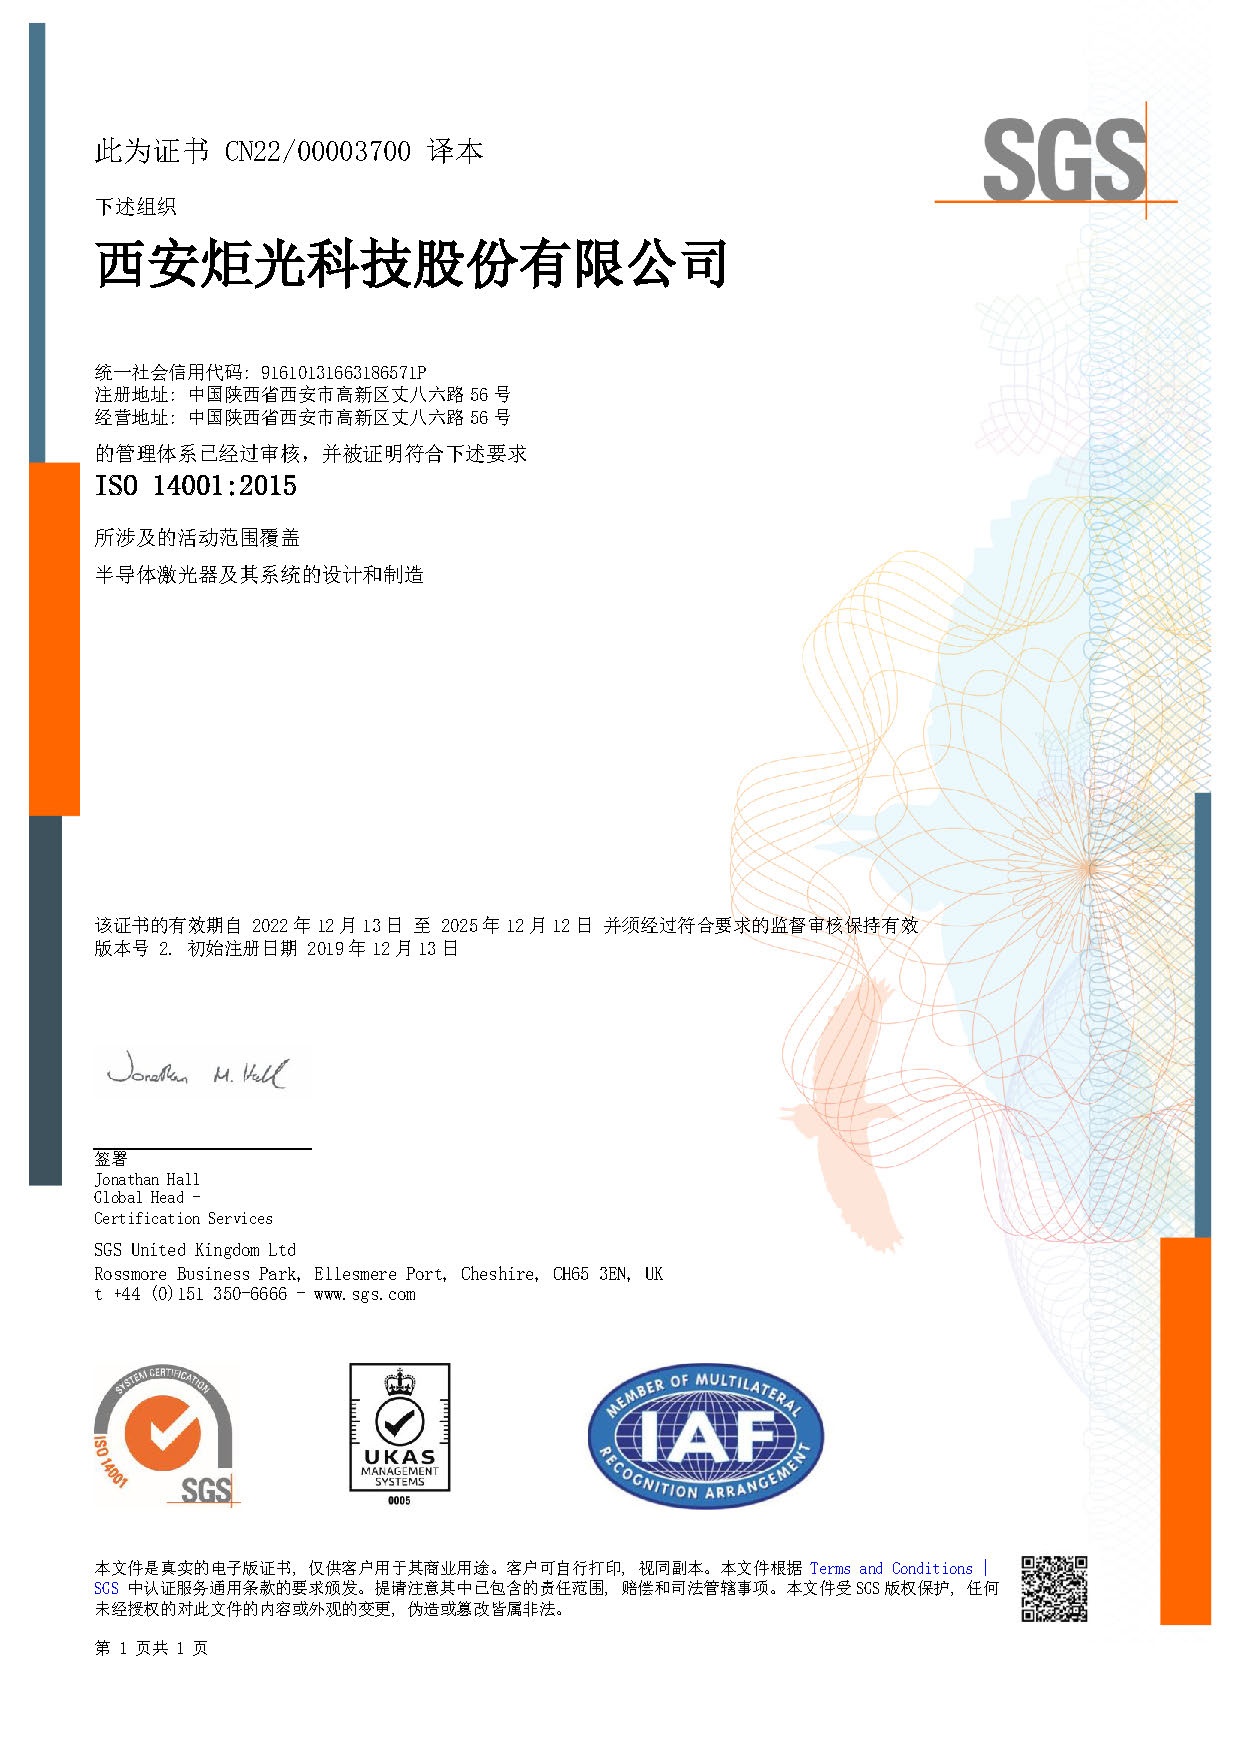 ISO 14001 西安总部